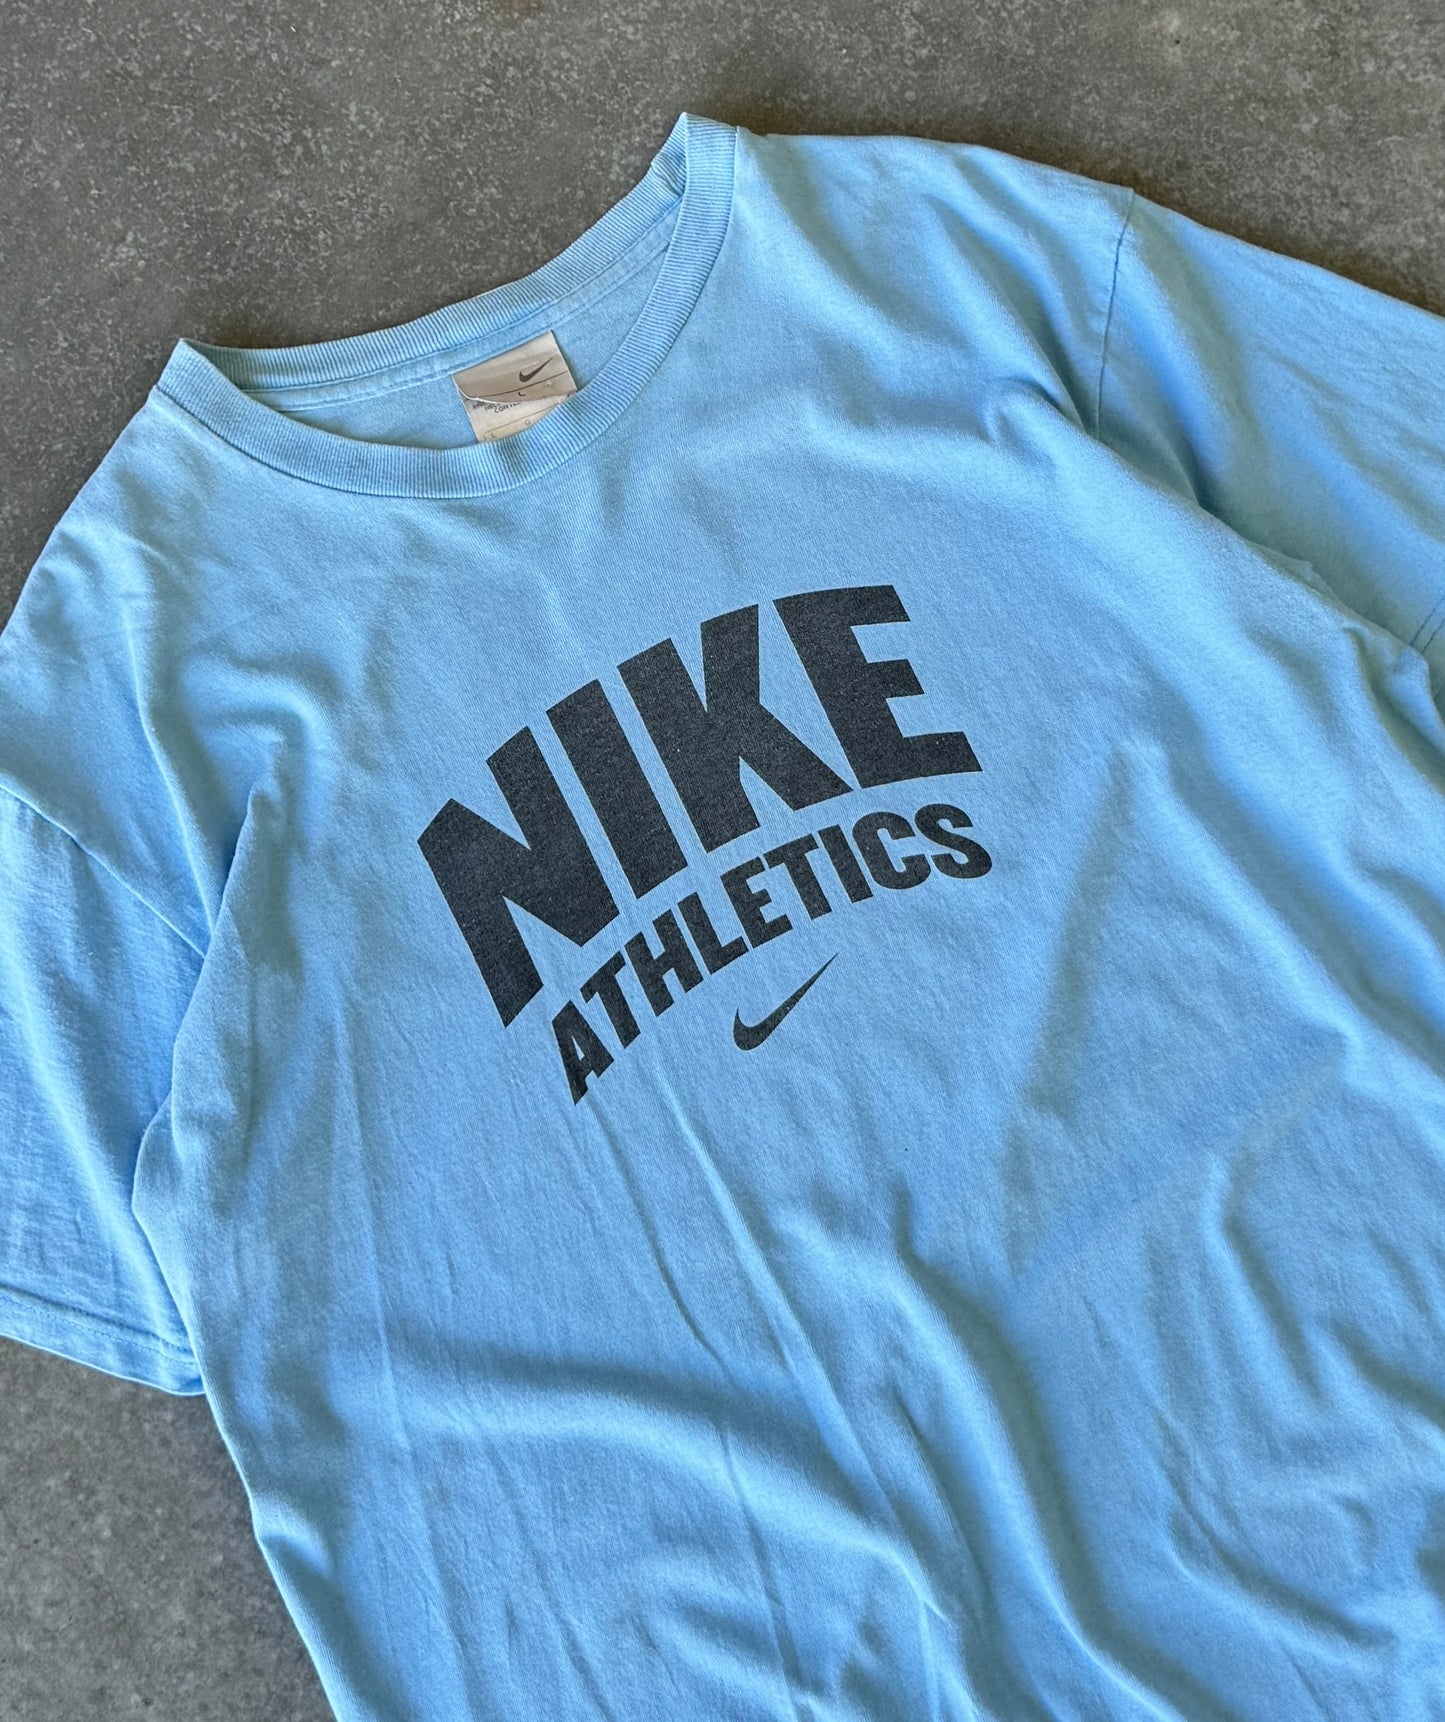 Vintage 00s Nike Athletics Tee (L)